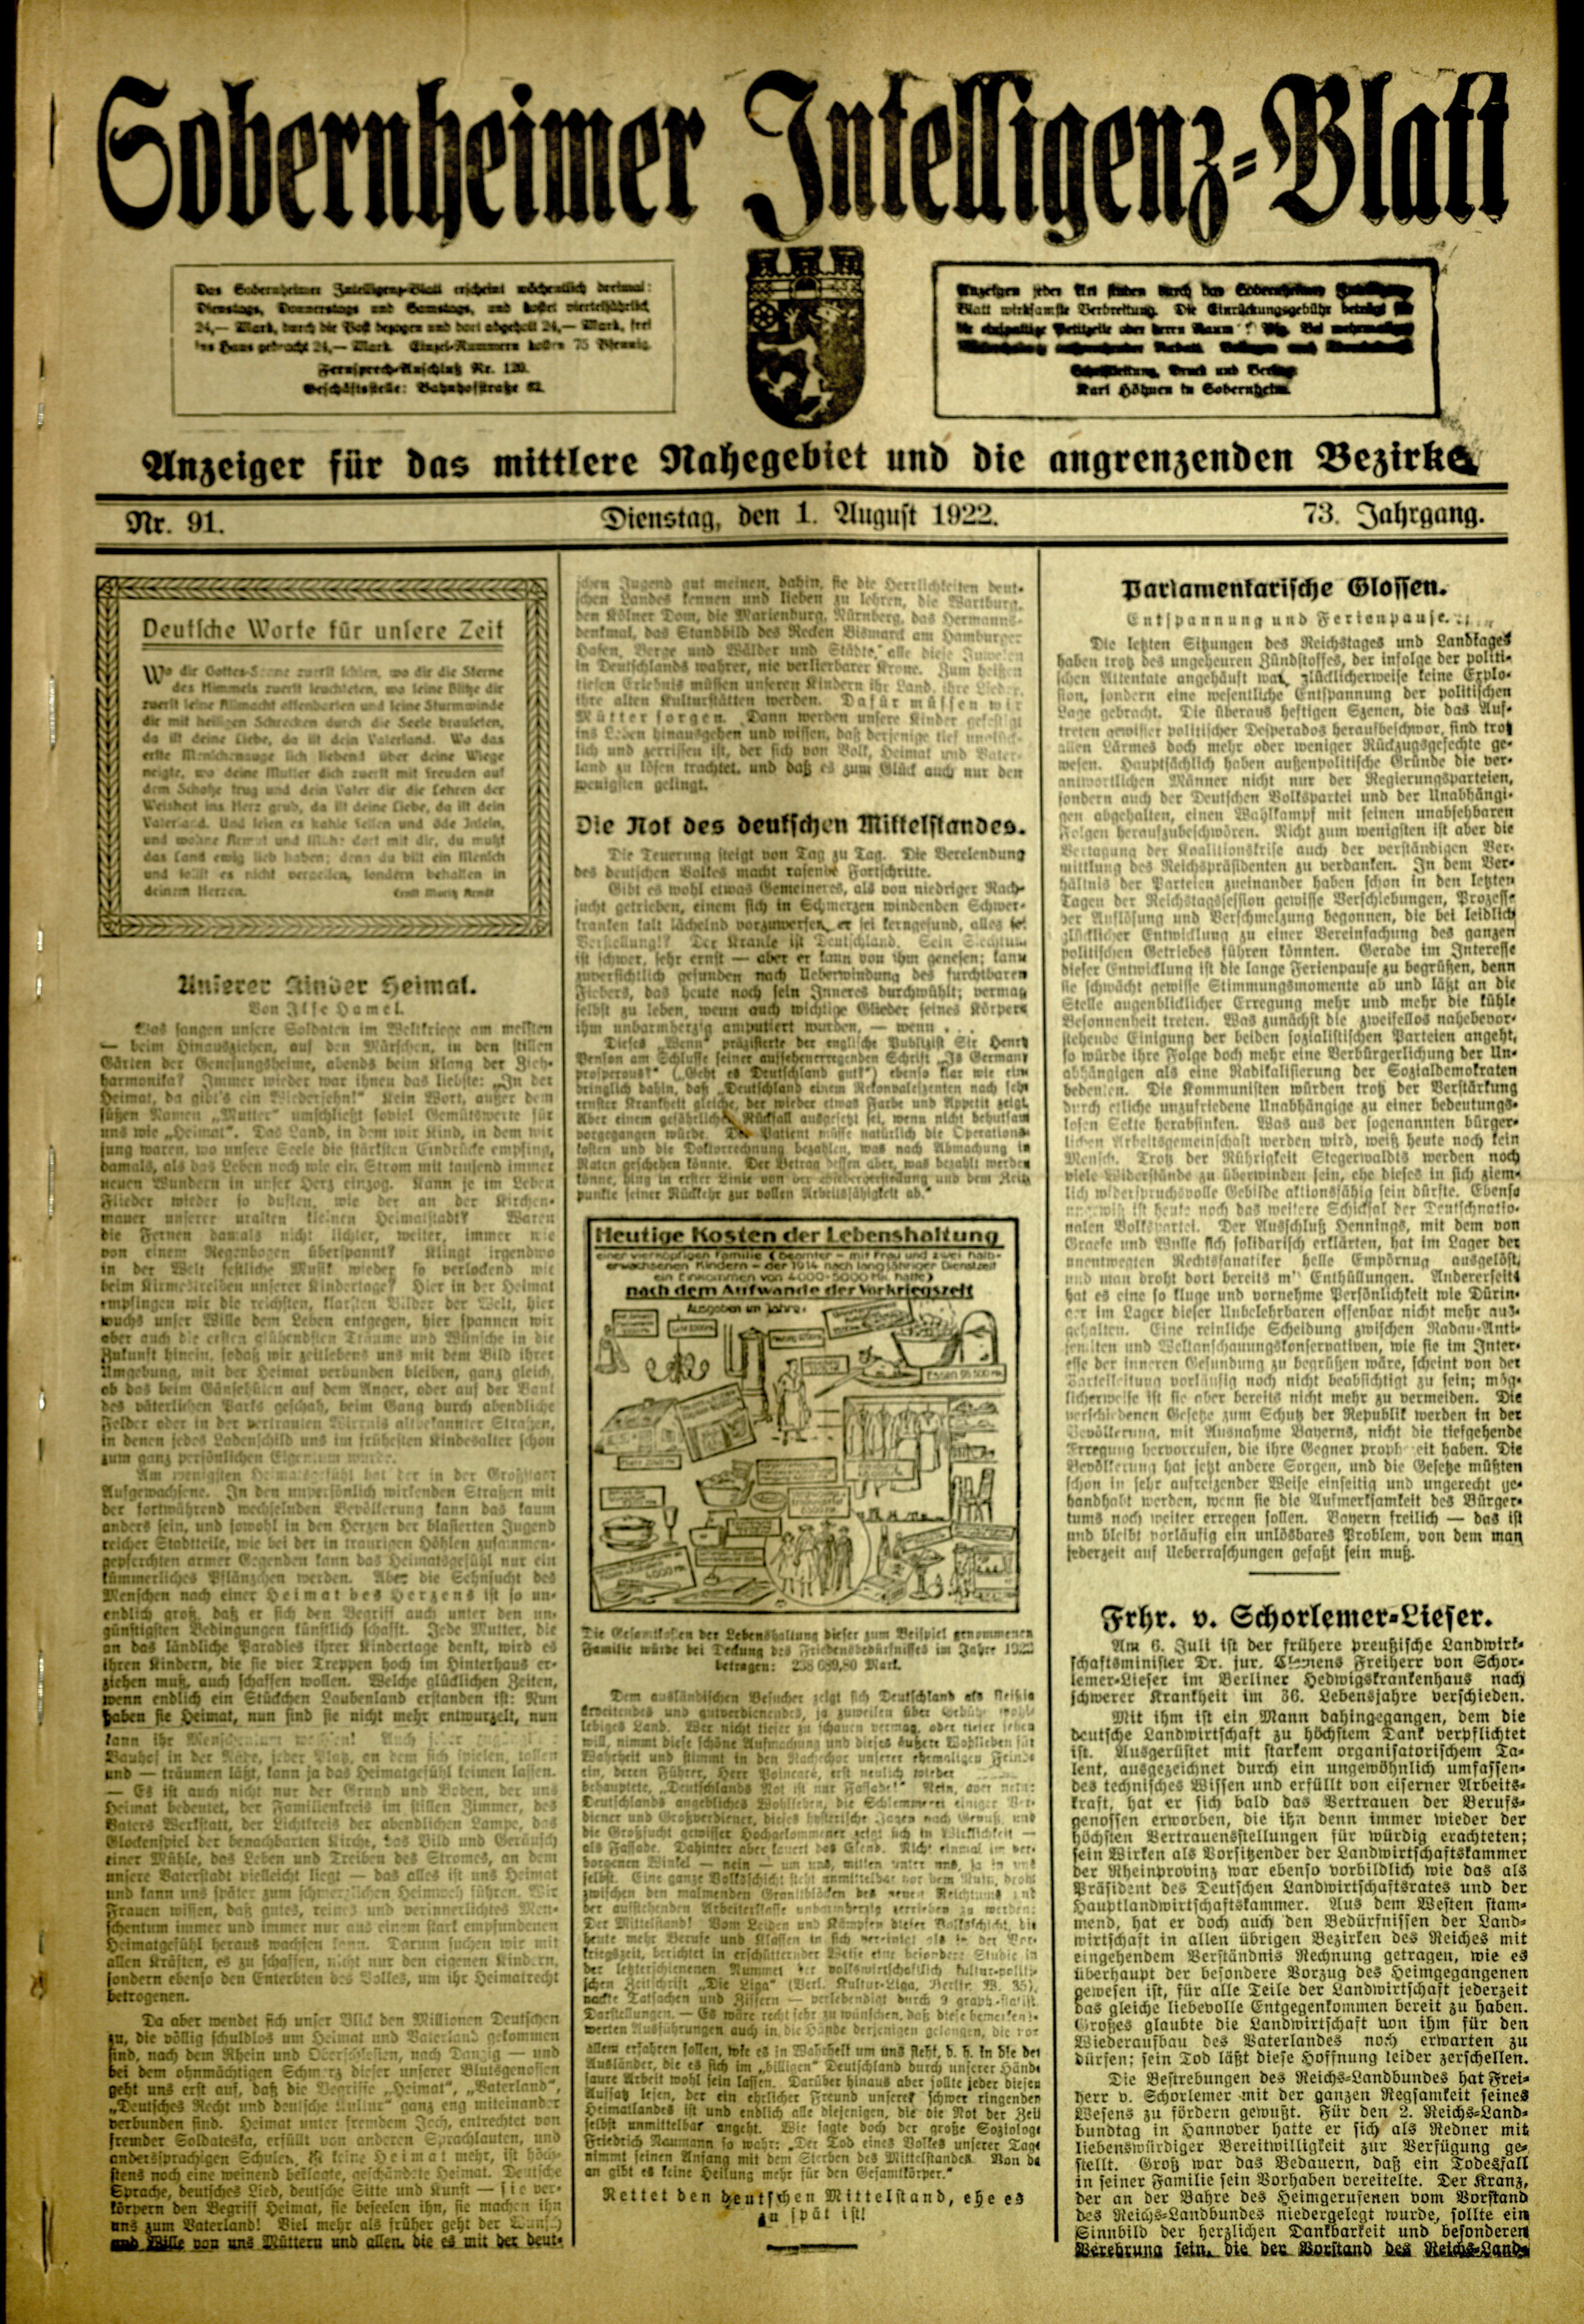 Zeitung: Sobernheimer Intelligenzblatt; August 1922, Jg. 73 Nr. 92 (Heimatmuseum Bad Sobernheim CC BY-NC-SA)